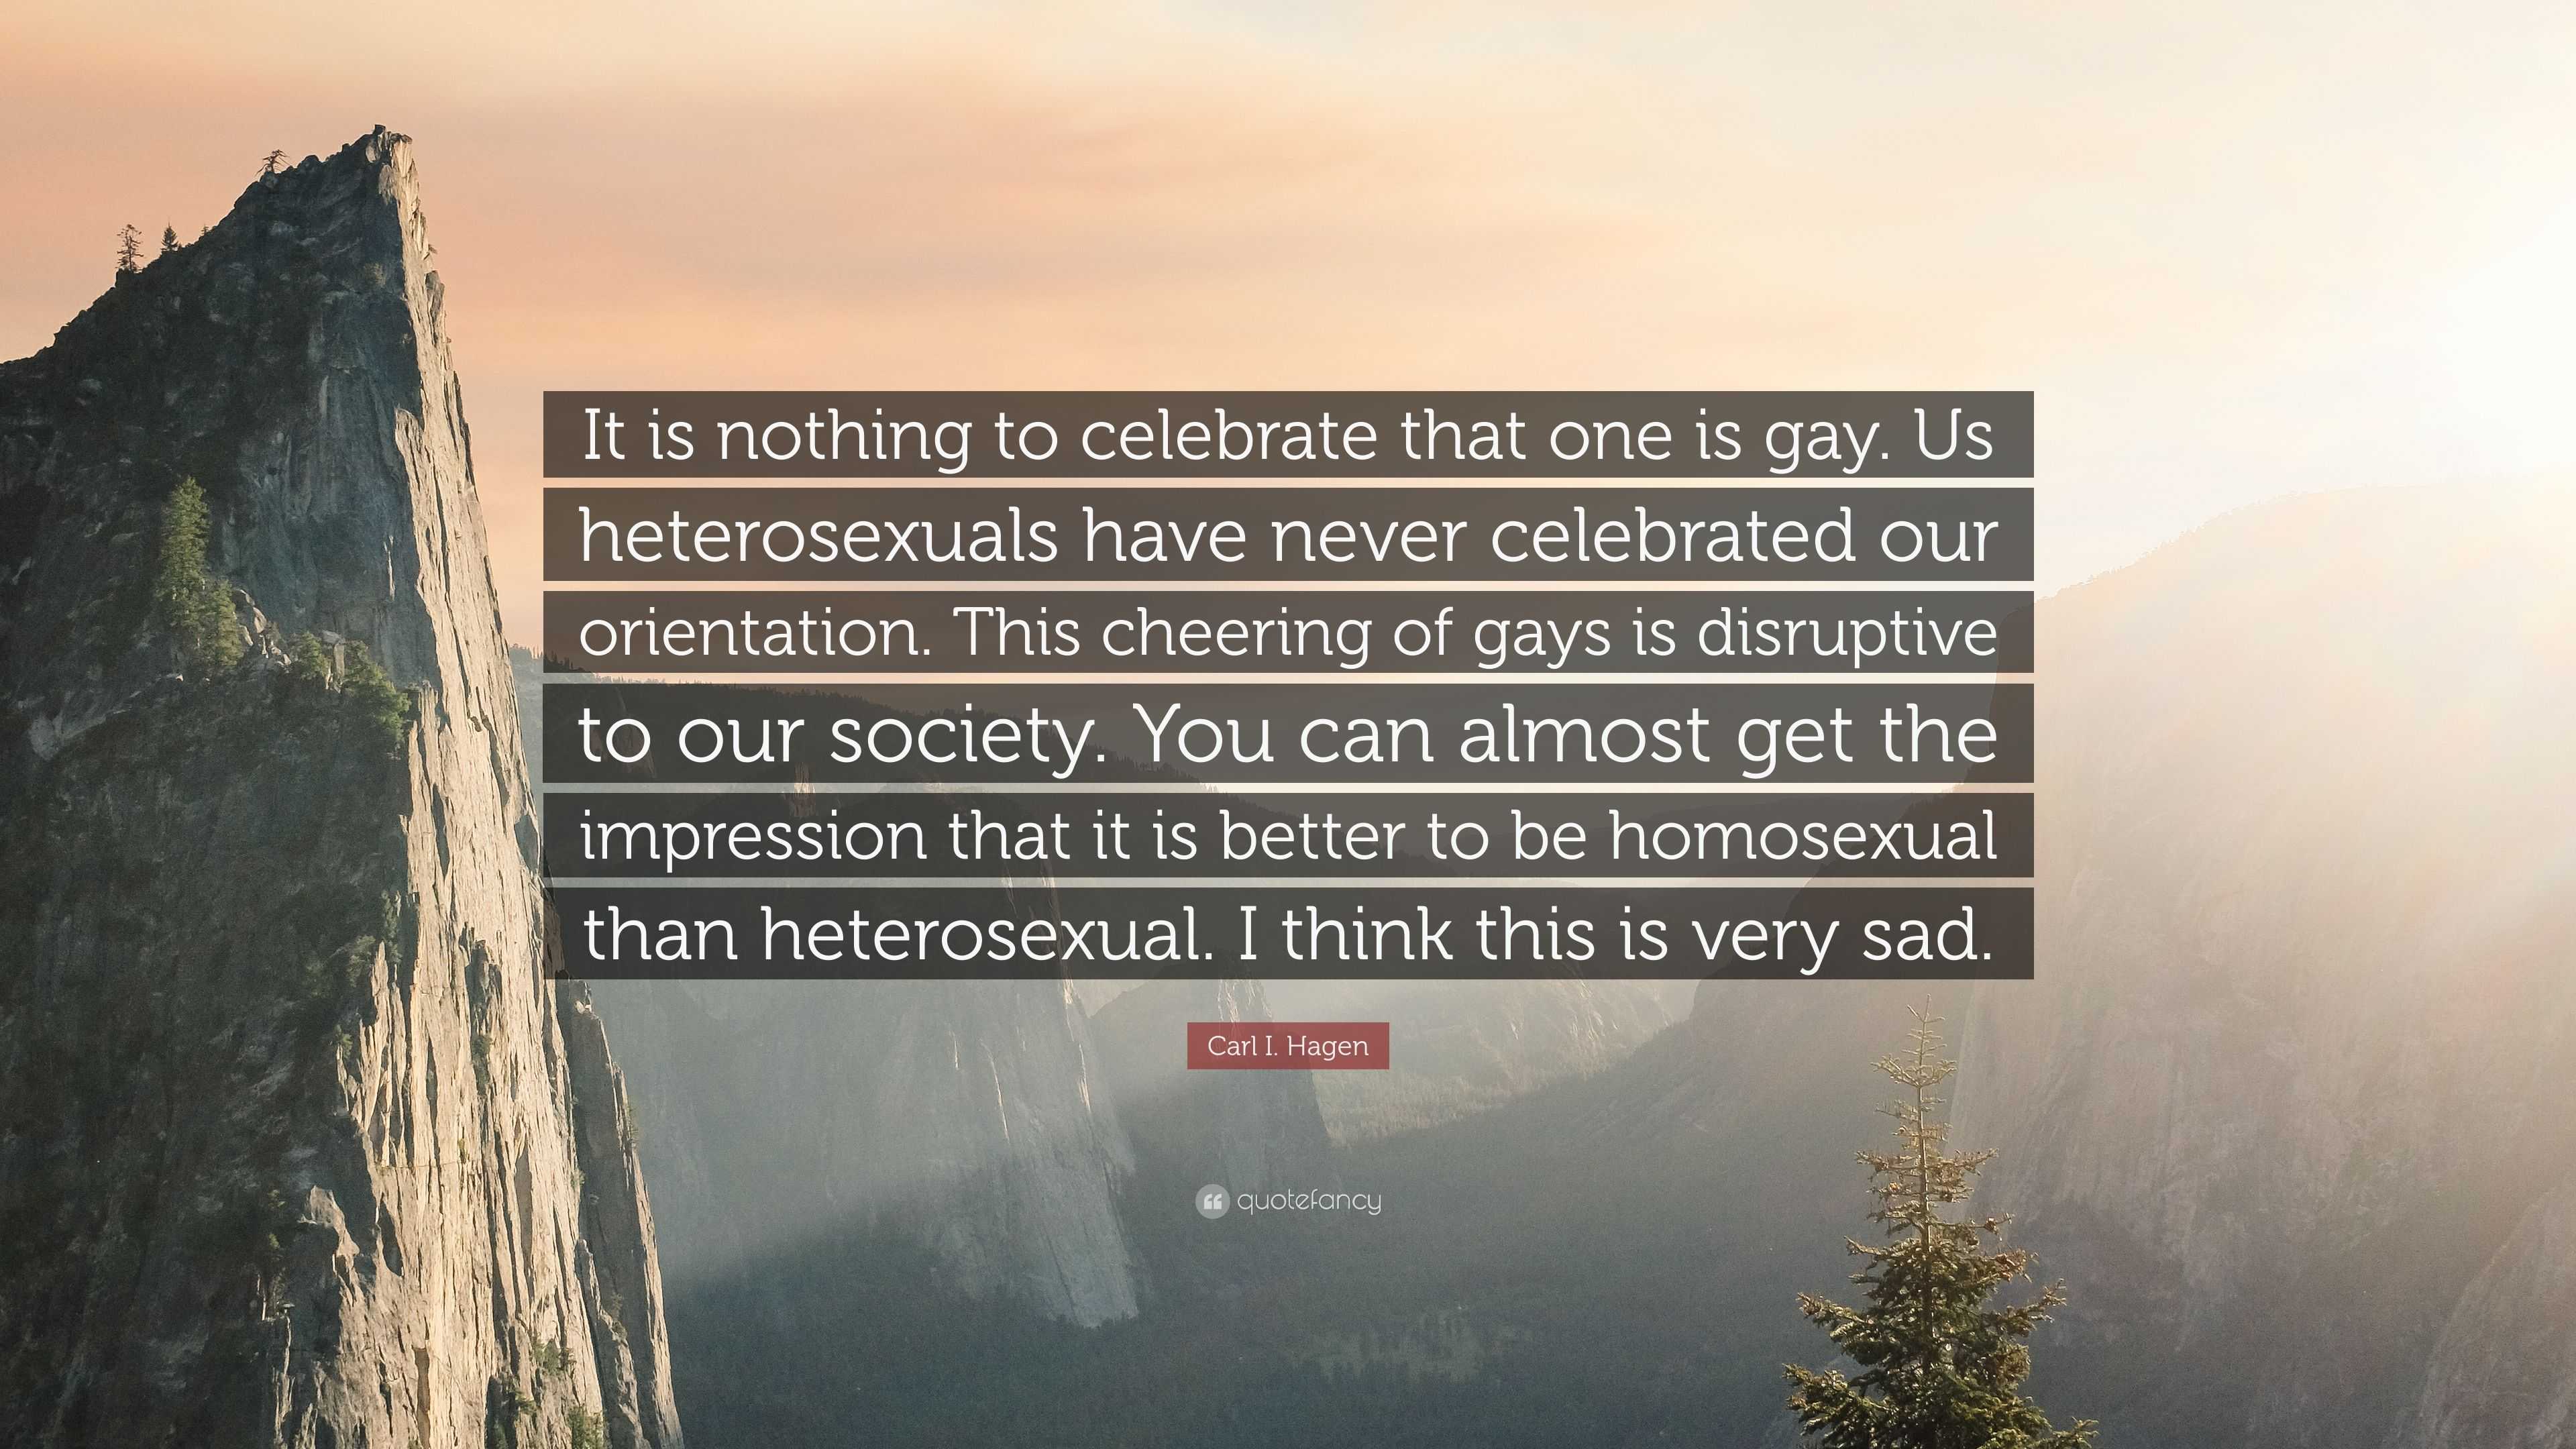 Heterosexual hazing